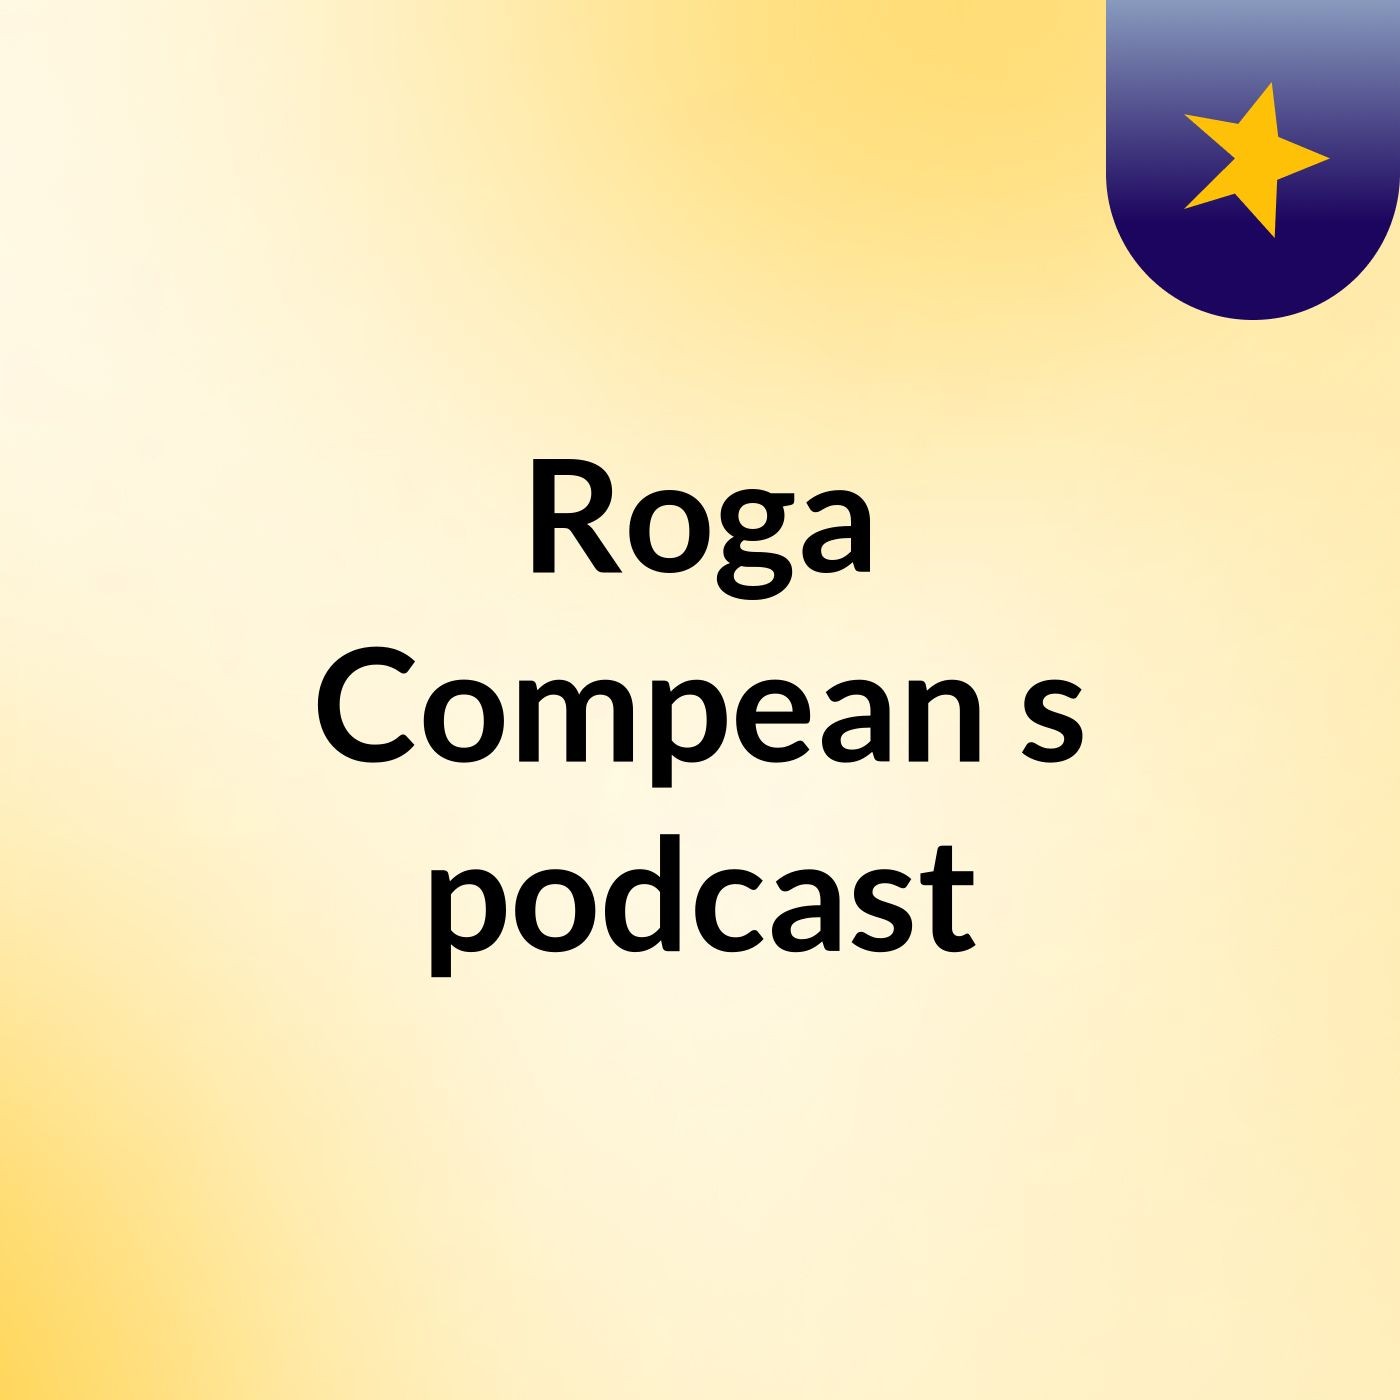 Roga Compean's podcast